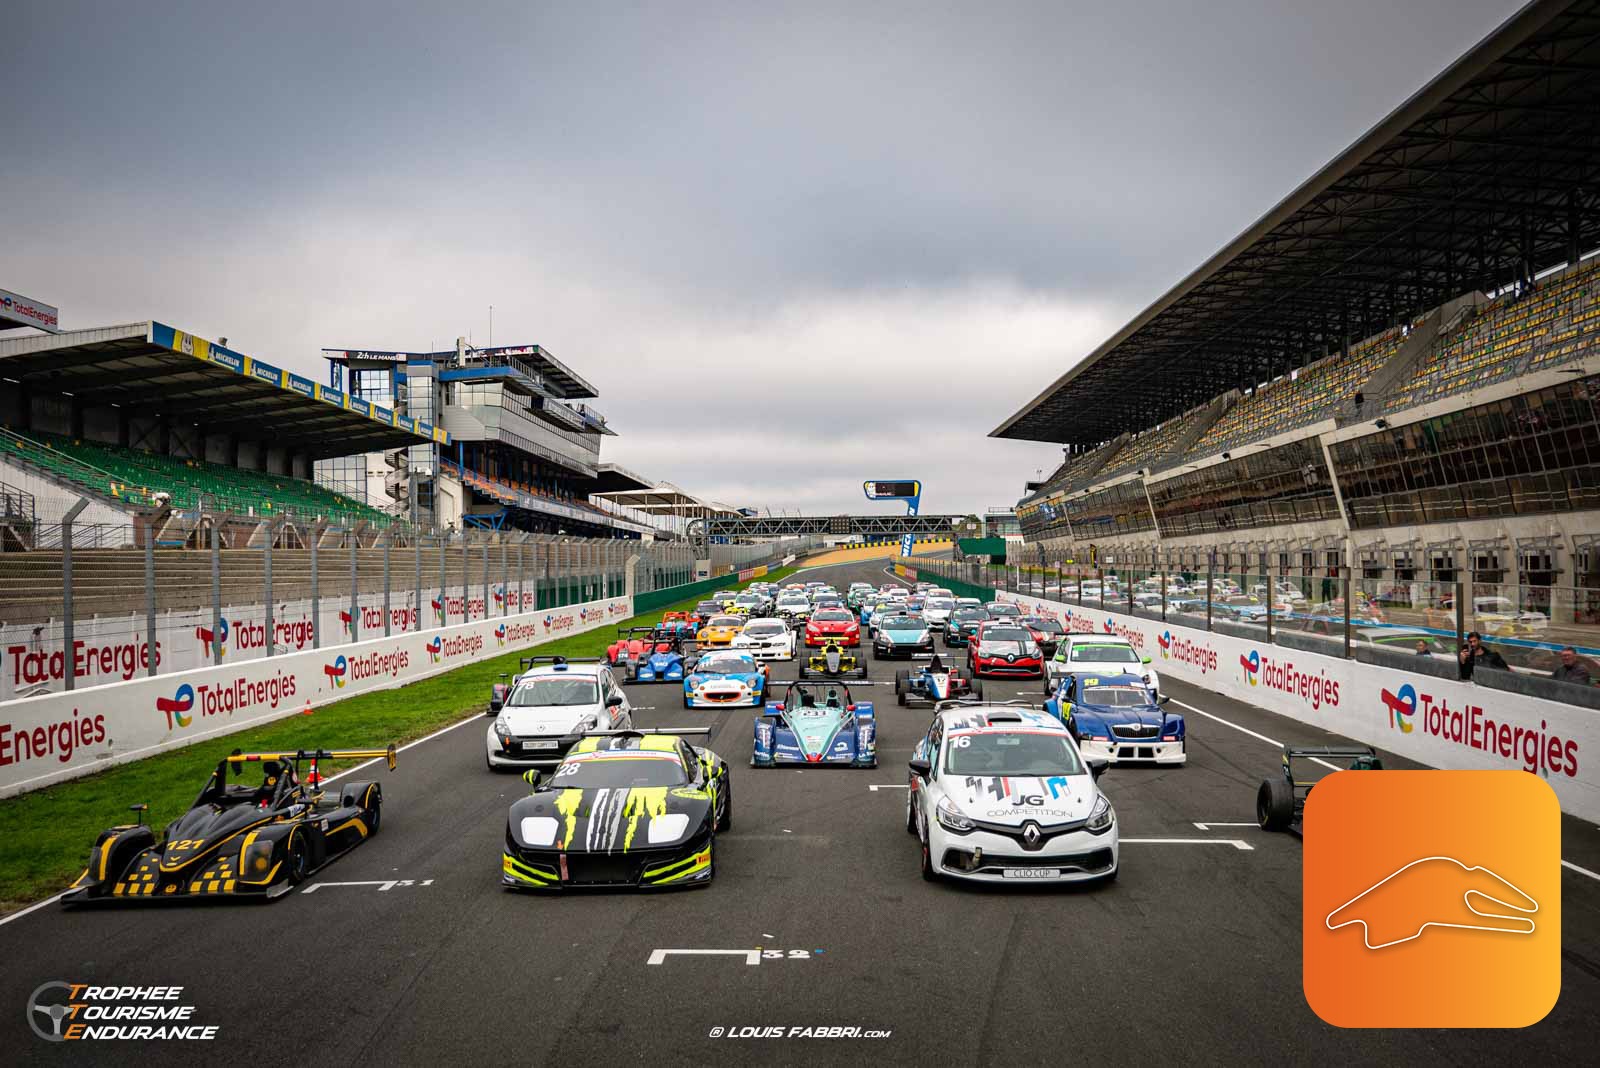 Circuit de course, vehicules-garages